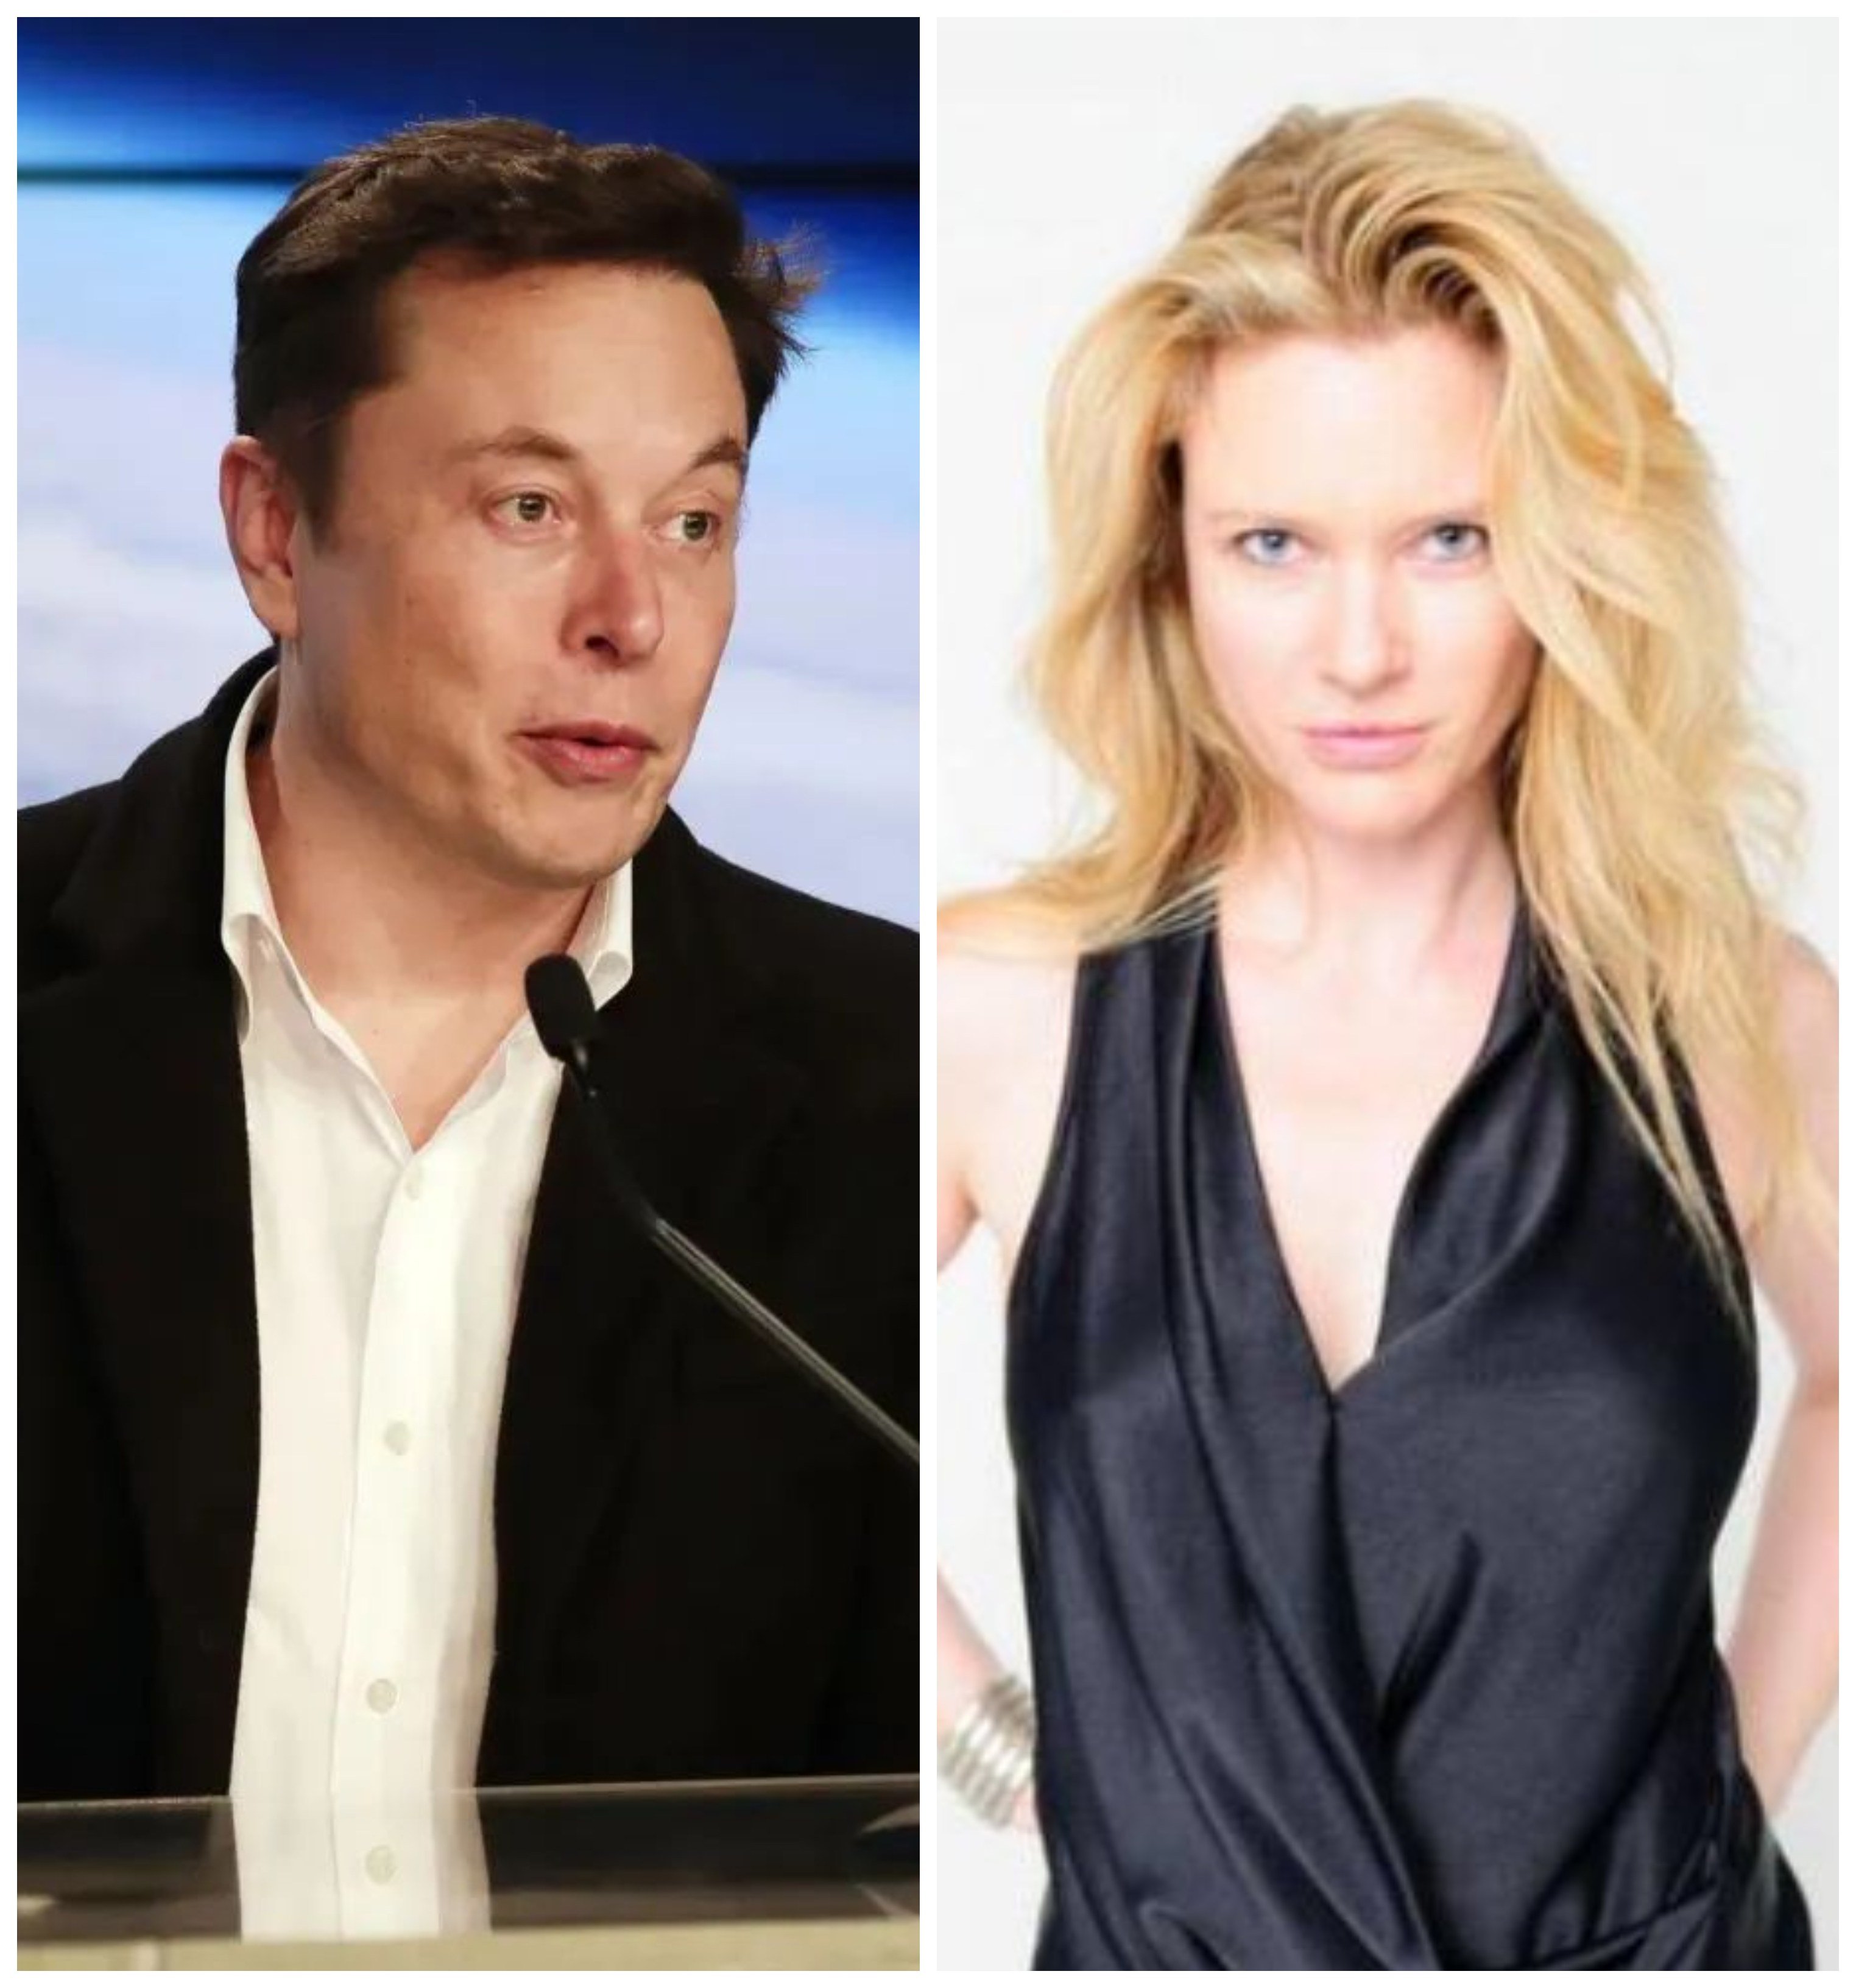 Elon Musk giving a speech; Justine Musk wearing a black dress